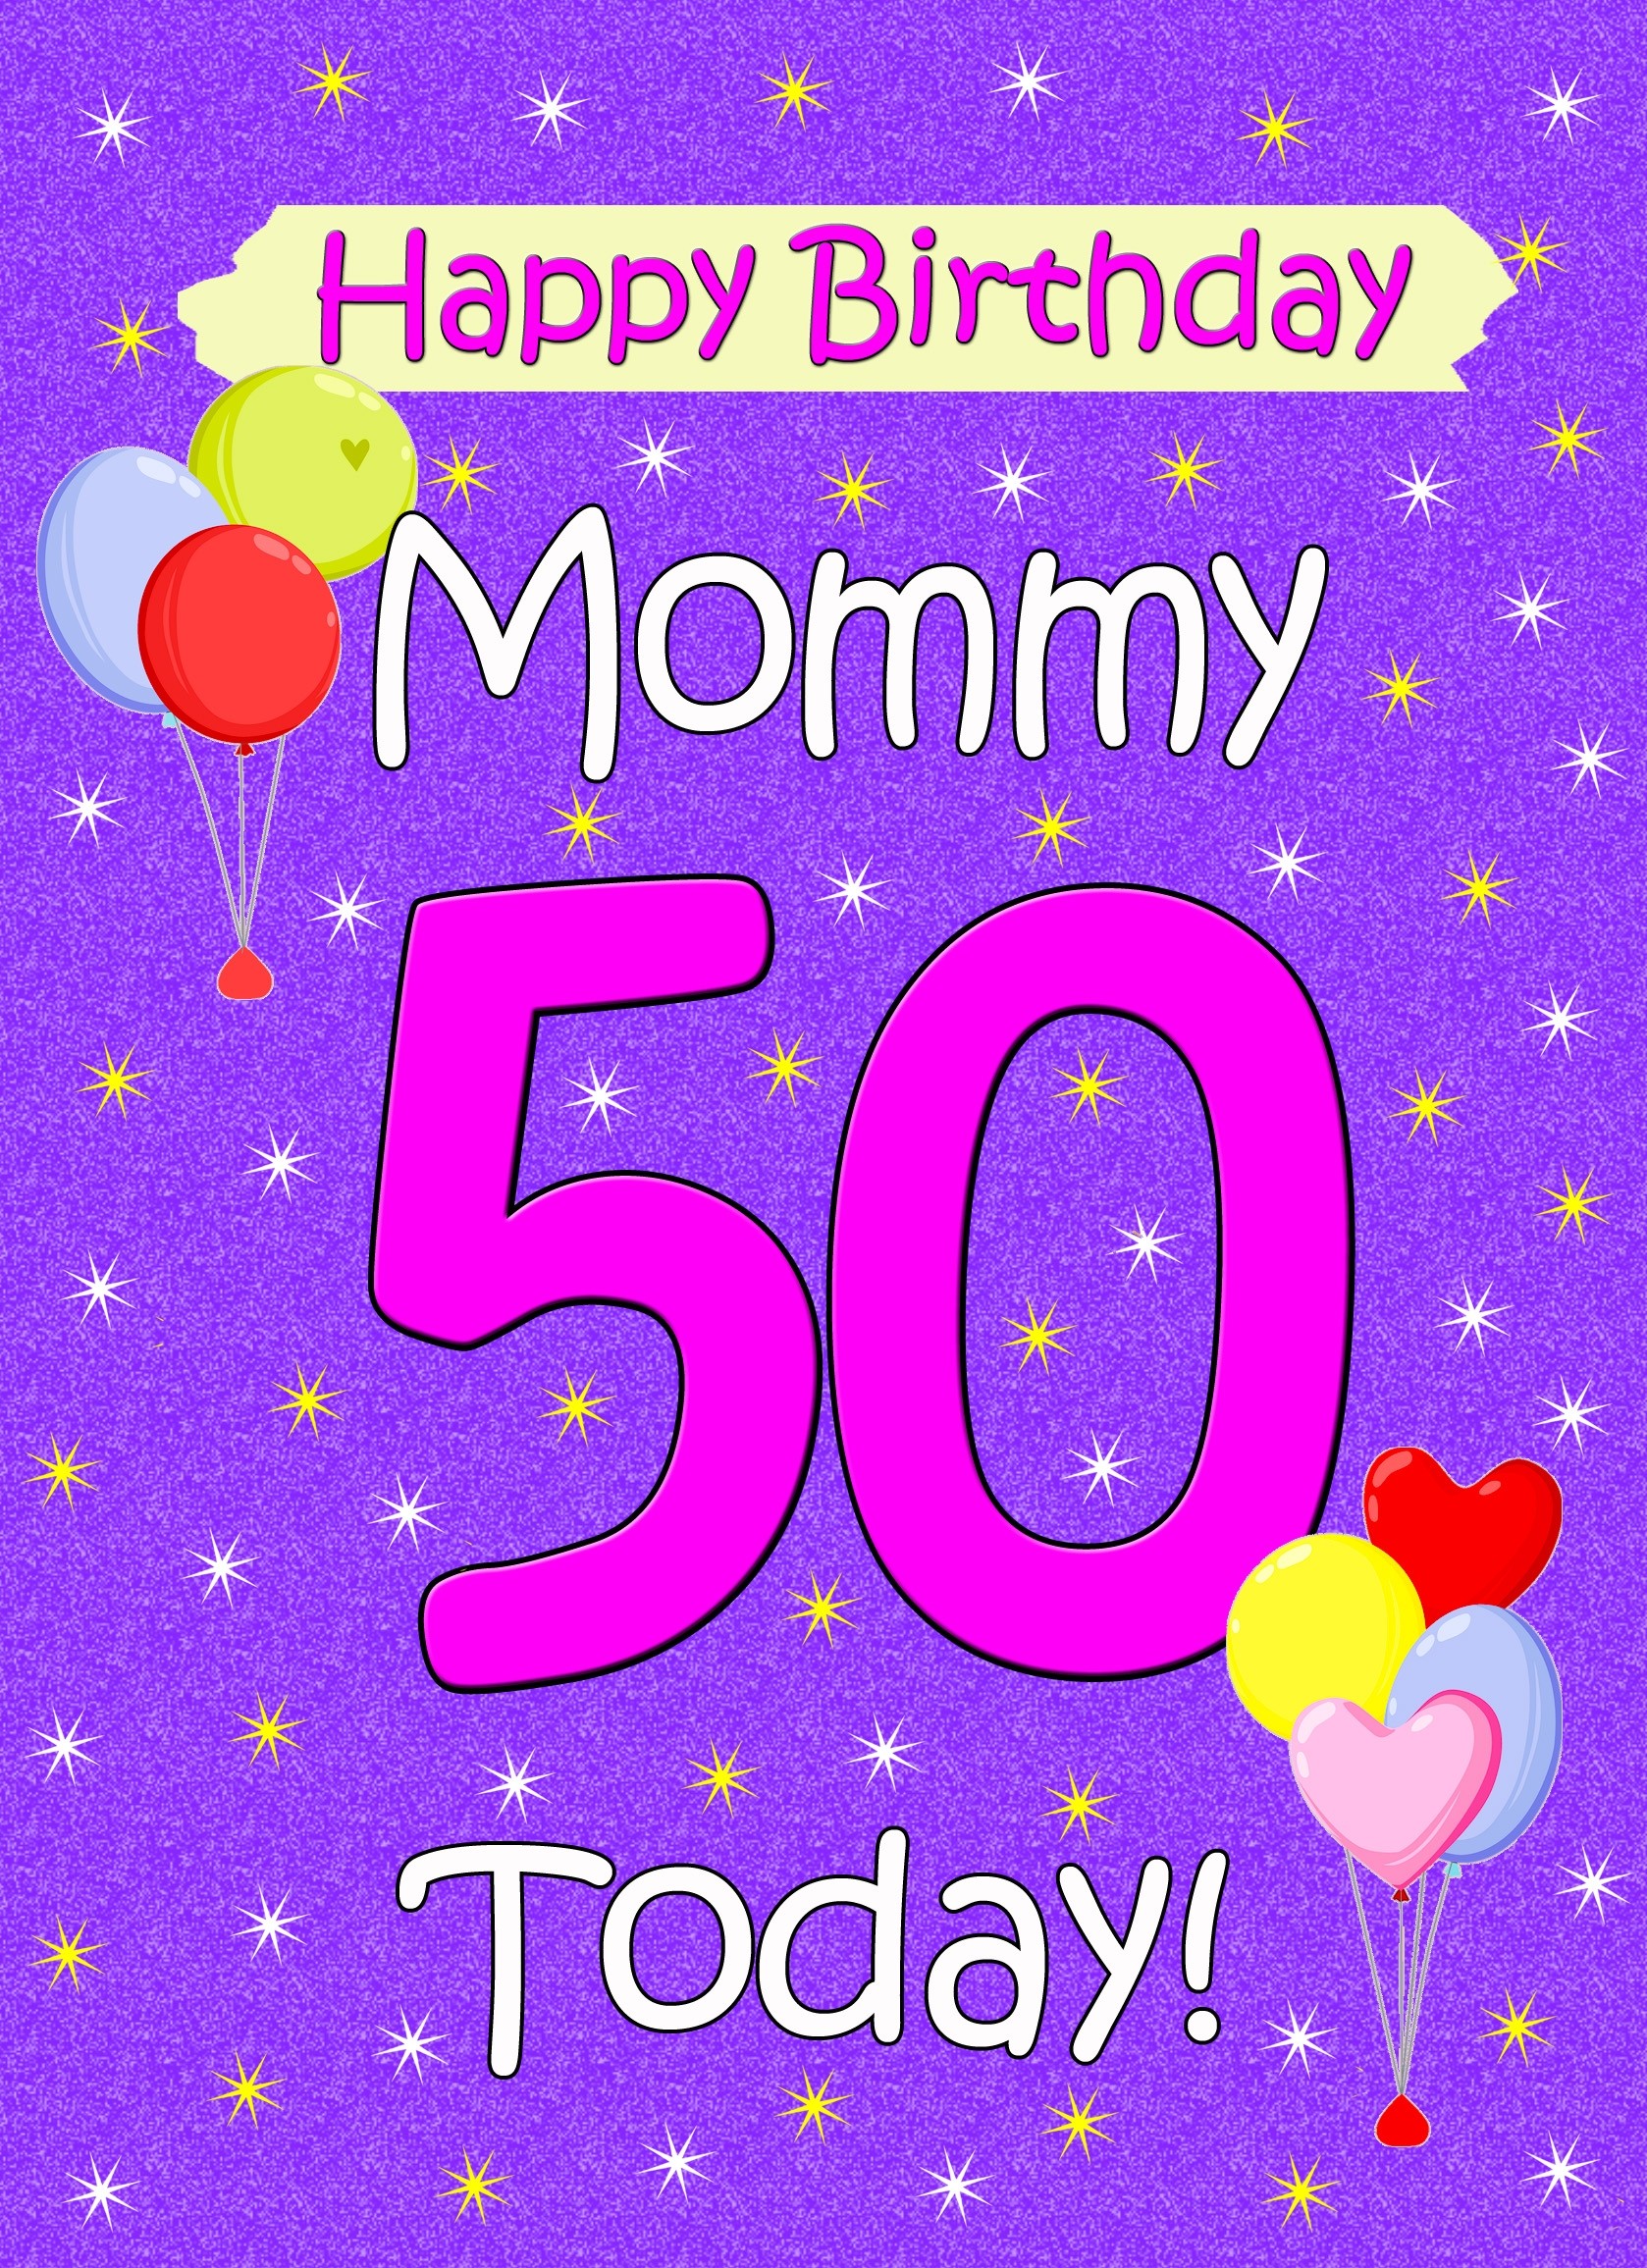 Mommy 50th Birthday Card (Lilac)